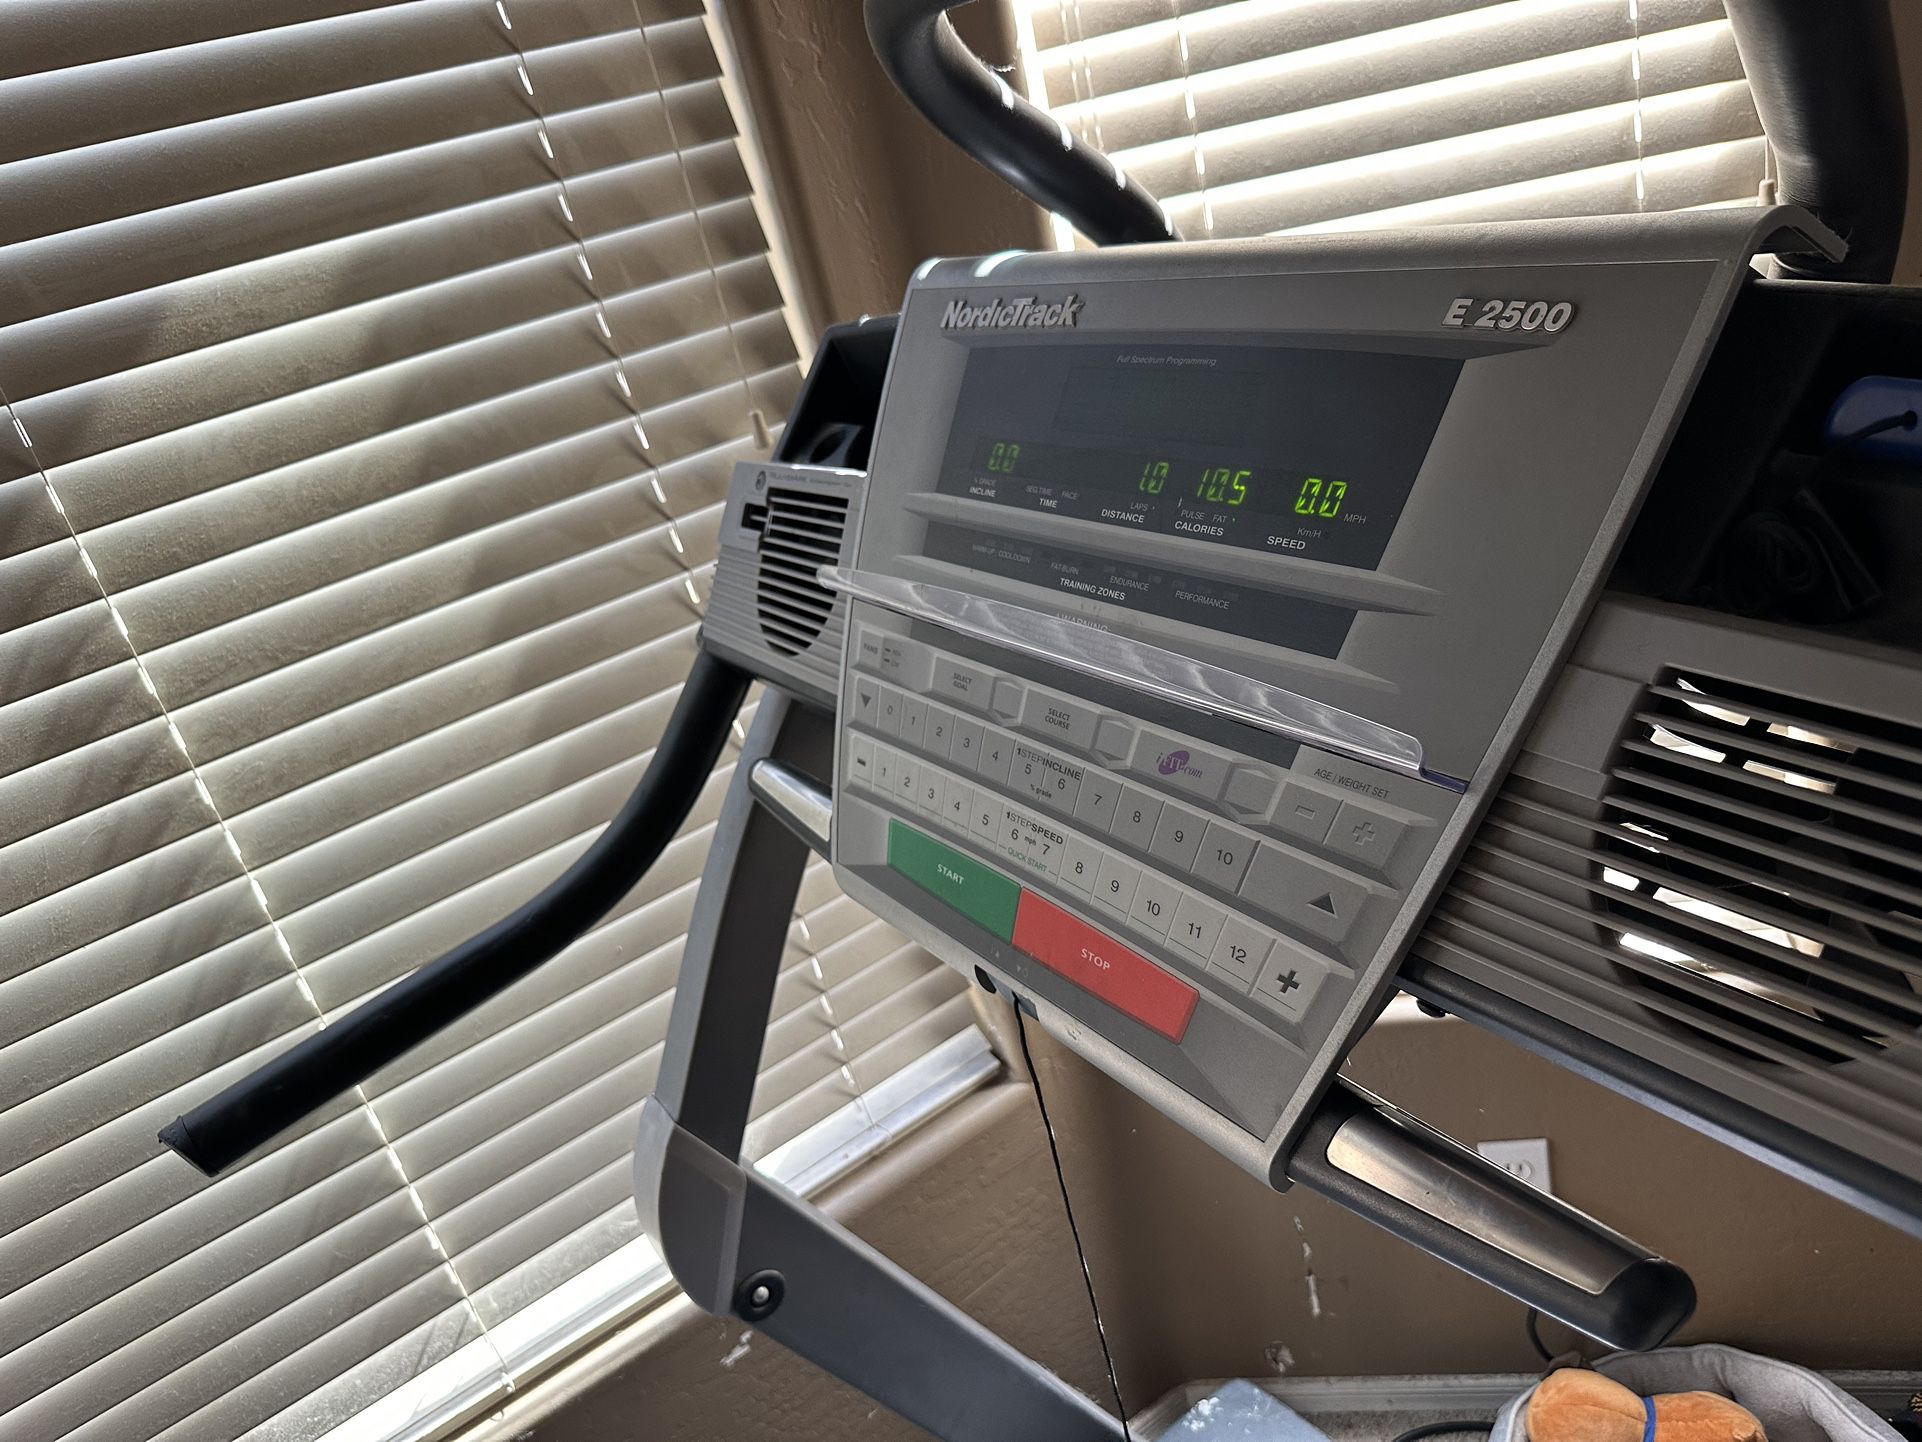 Nordi Track E-2500 Treadmill 